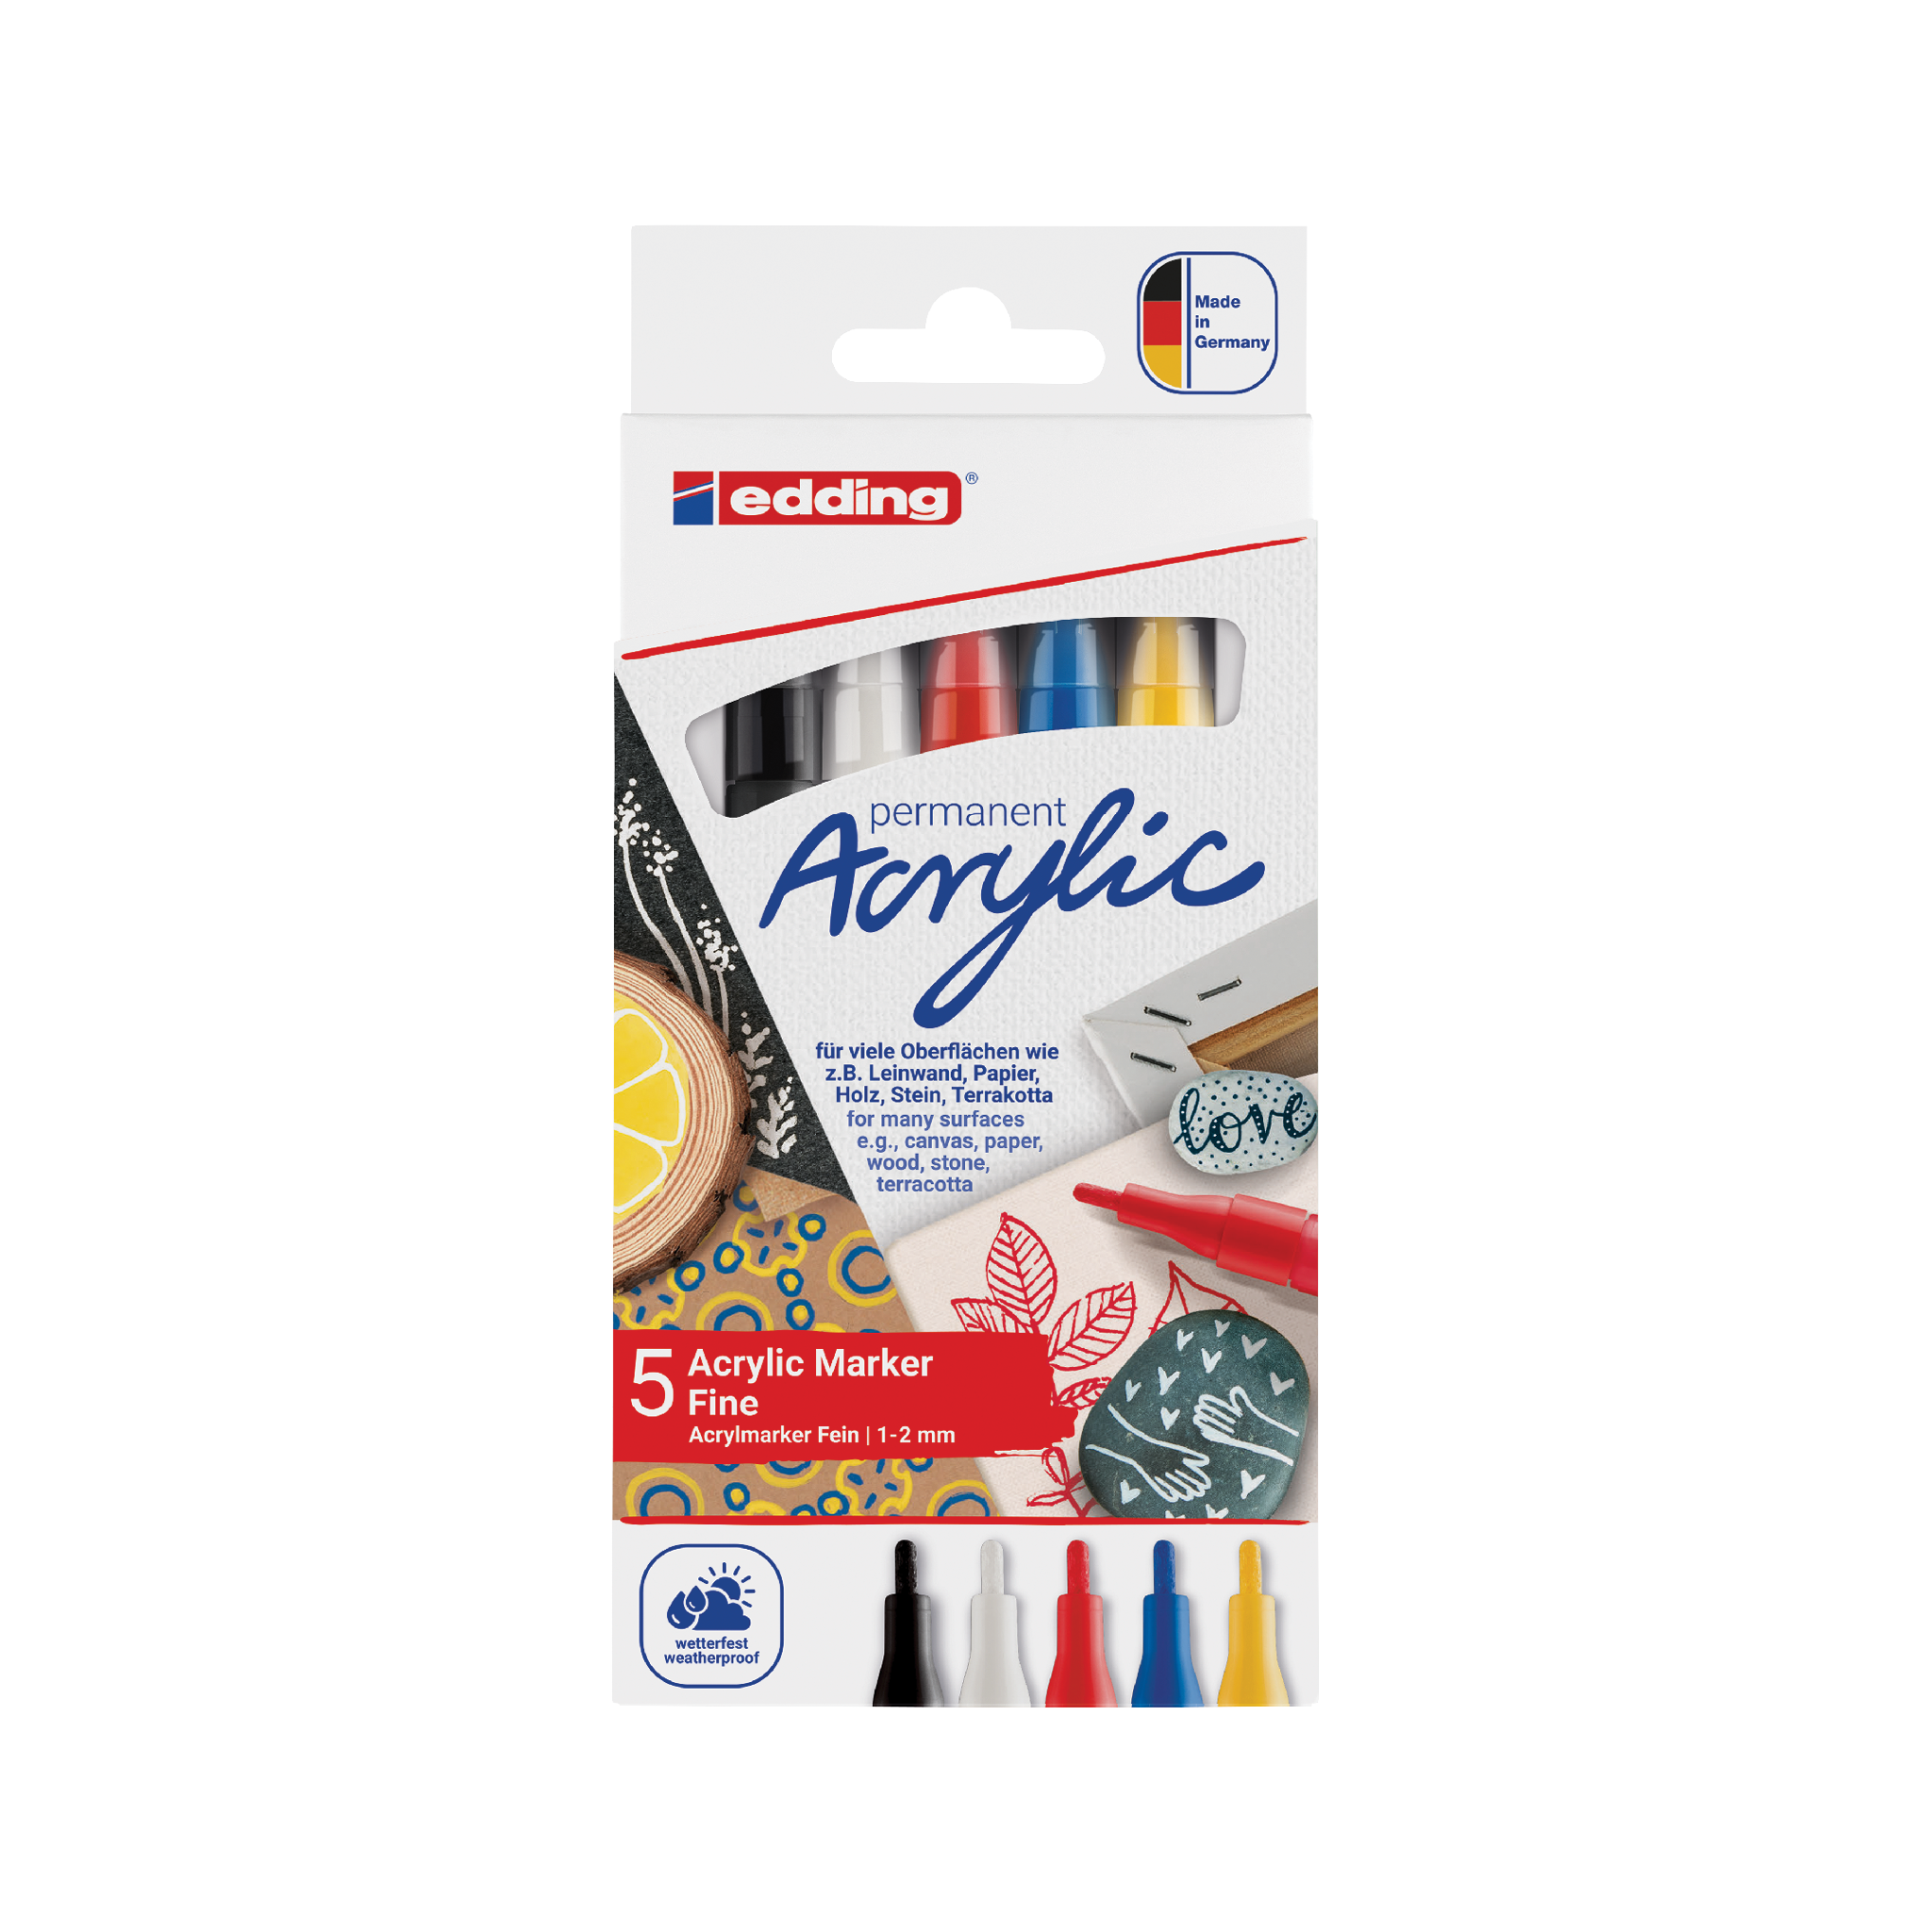 Eine Packung mit 5 edding 5300 Acrylmarkern fein mit feinen Spitzen, die eine Vielzahl von Farben darstellen und für kreative Kunst auf verschiedenen Oberflächen geeignet sind.